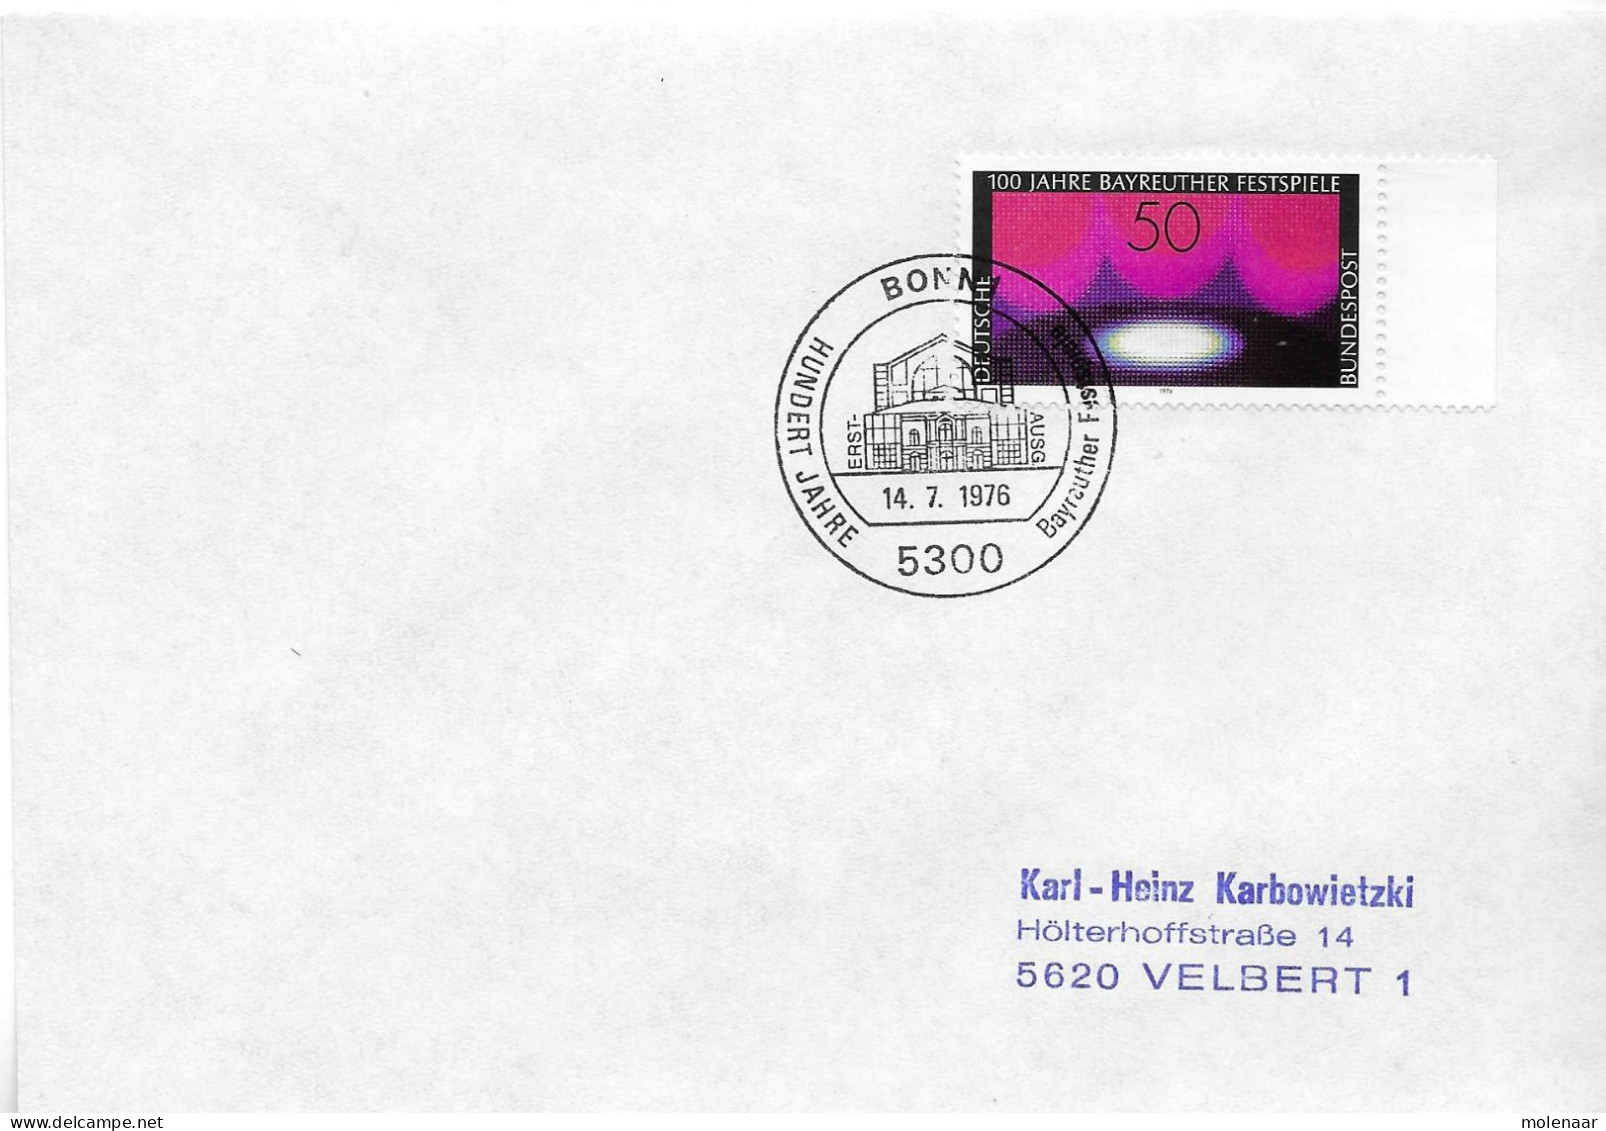 Postzegels > Europa > Duitsland > West-Duitsland > 1970-1979 > Brief Met No. 896  (17378) - Lettres & Documents